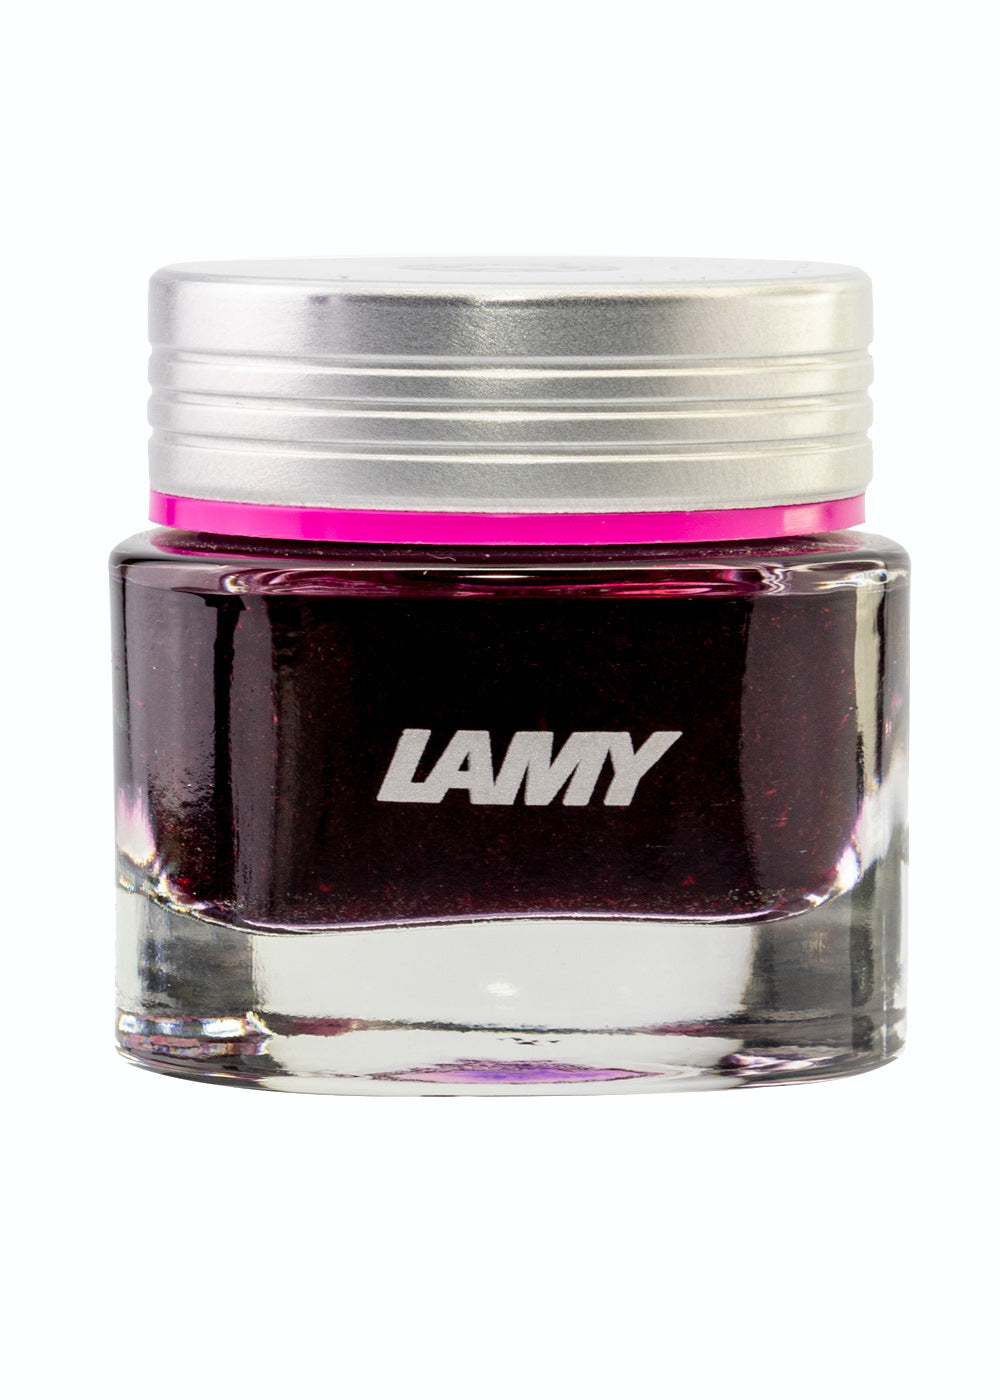 Lamy Crystal Rhodonite ink